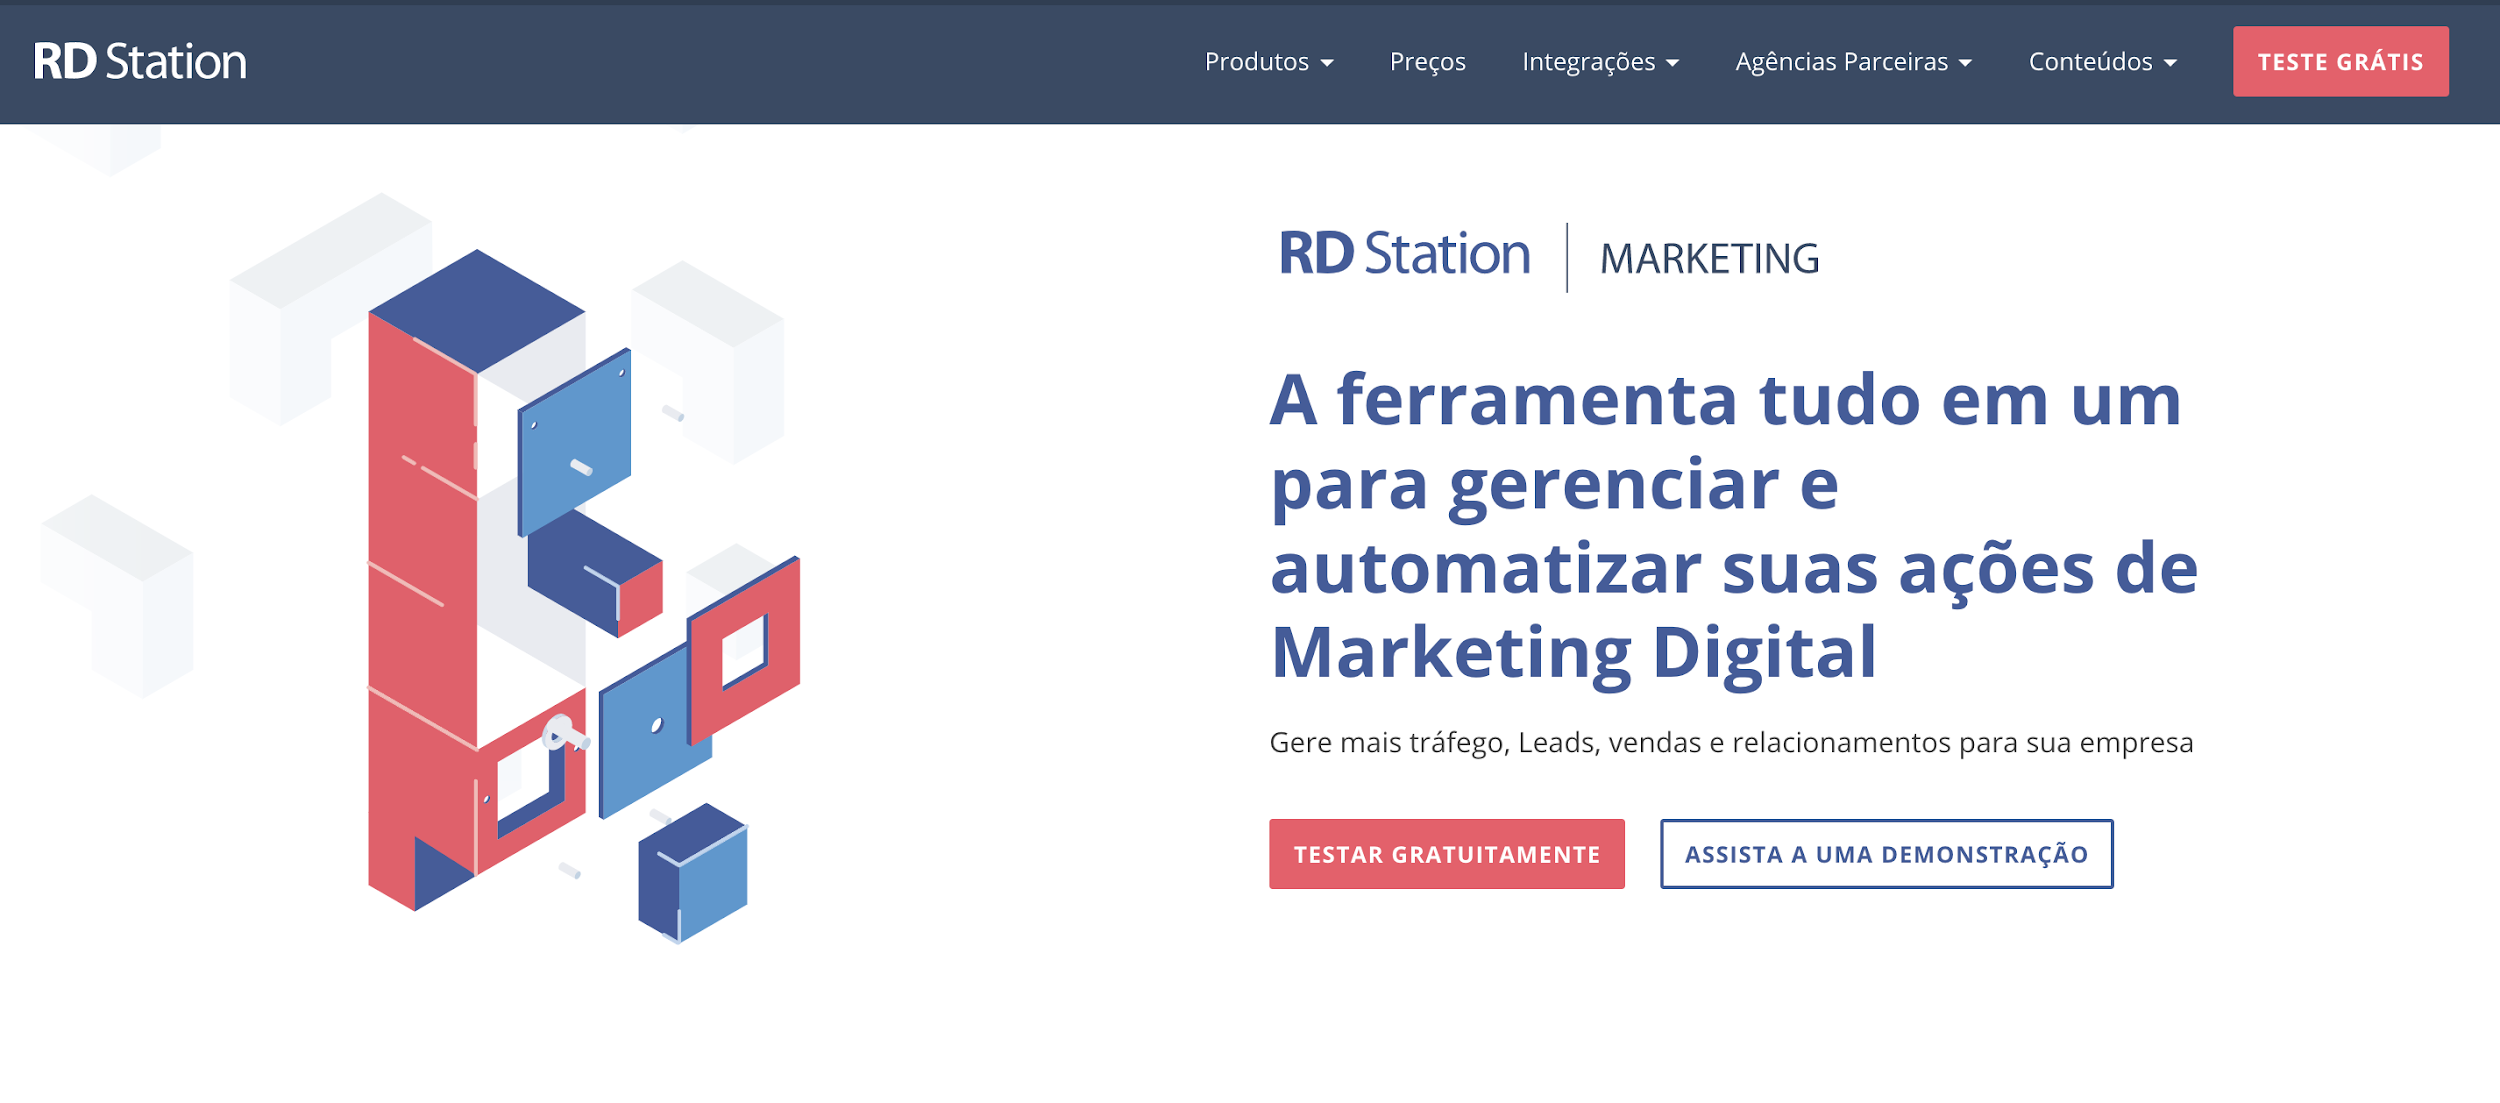 RD Station como exemplo de ferramenta de email marketing